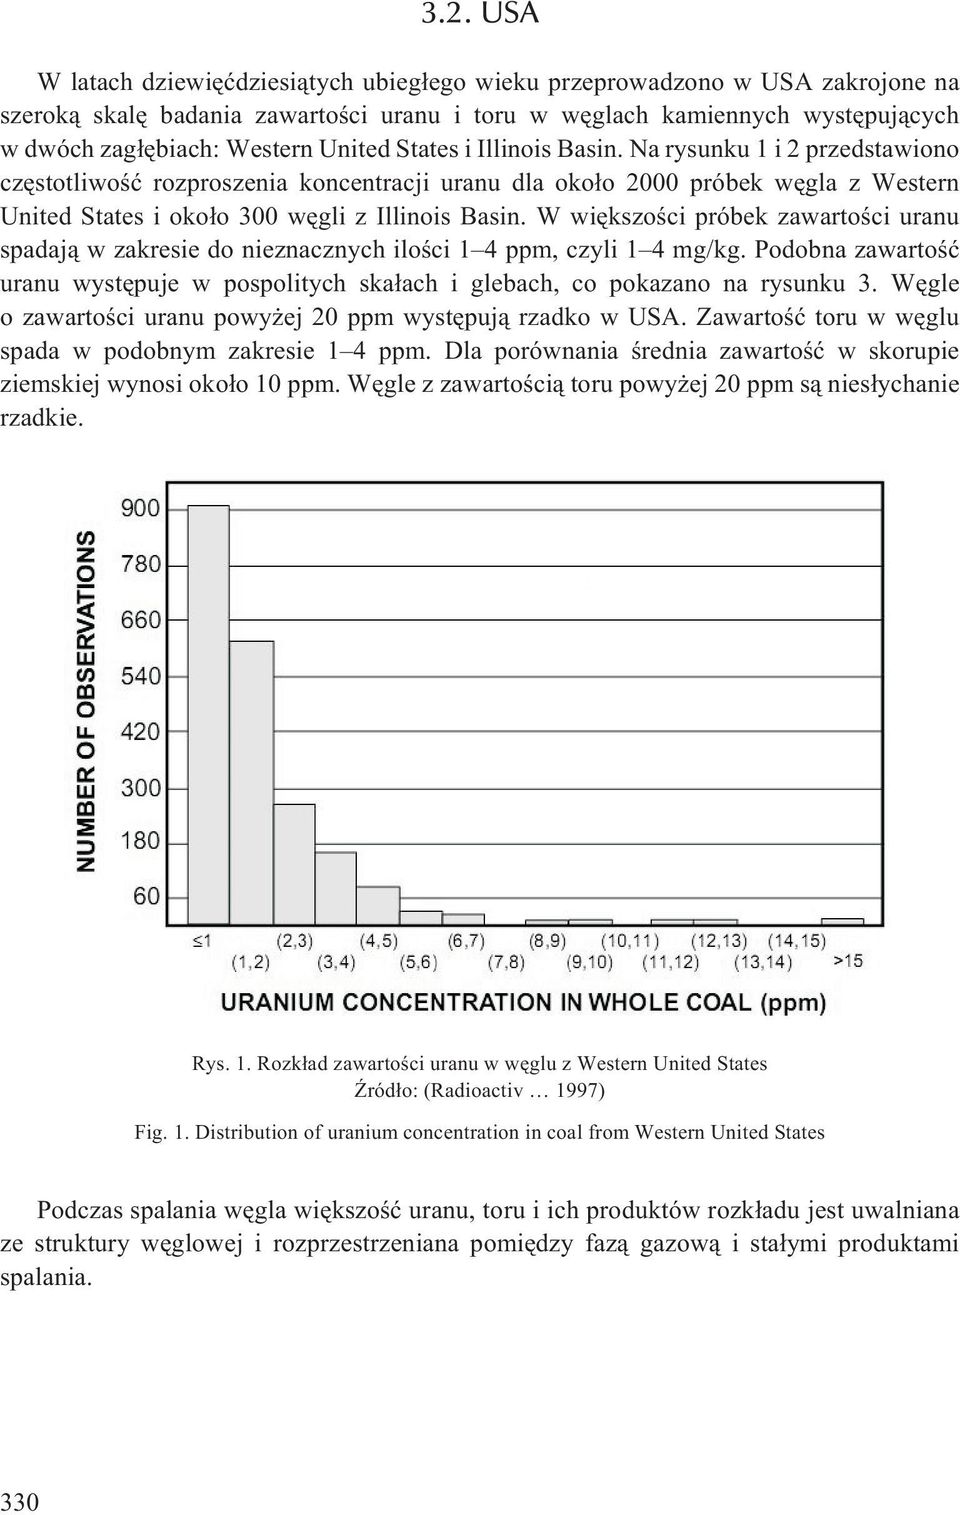 W wiêkszoœci próbek zawartoœci uranu spadaj¹ w zakresie do nieznacznych iloœci 1 4 ppm, czyli 1 4 mg/kg. Podobna zawartoœæ uranu wystêpuje w pospolitych ska³ach i glebach, co pokazano na rysunku 3.